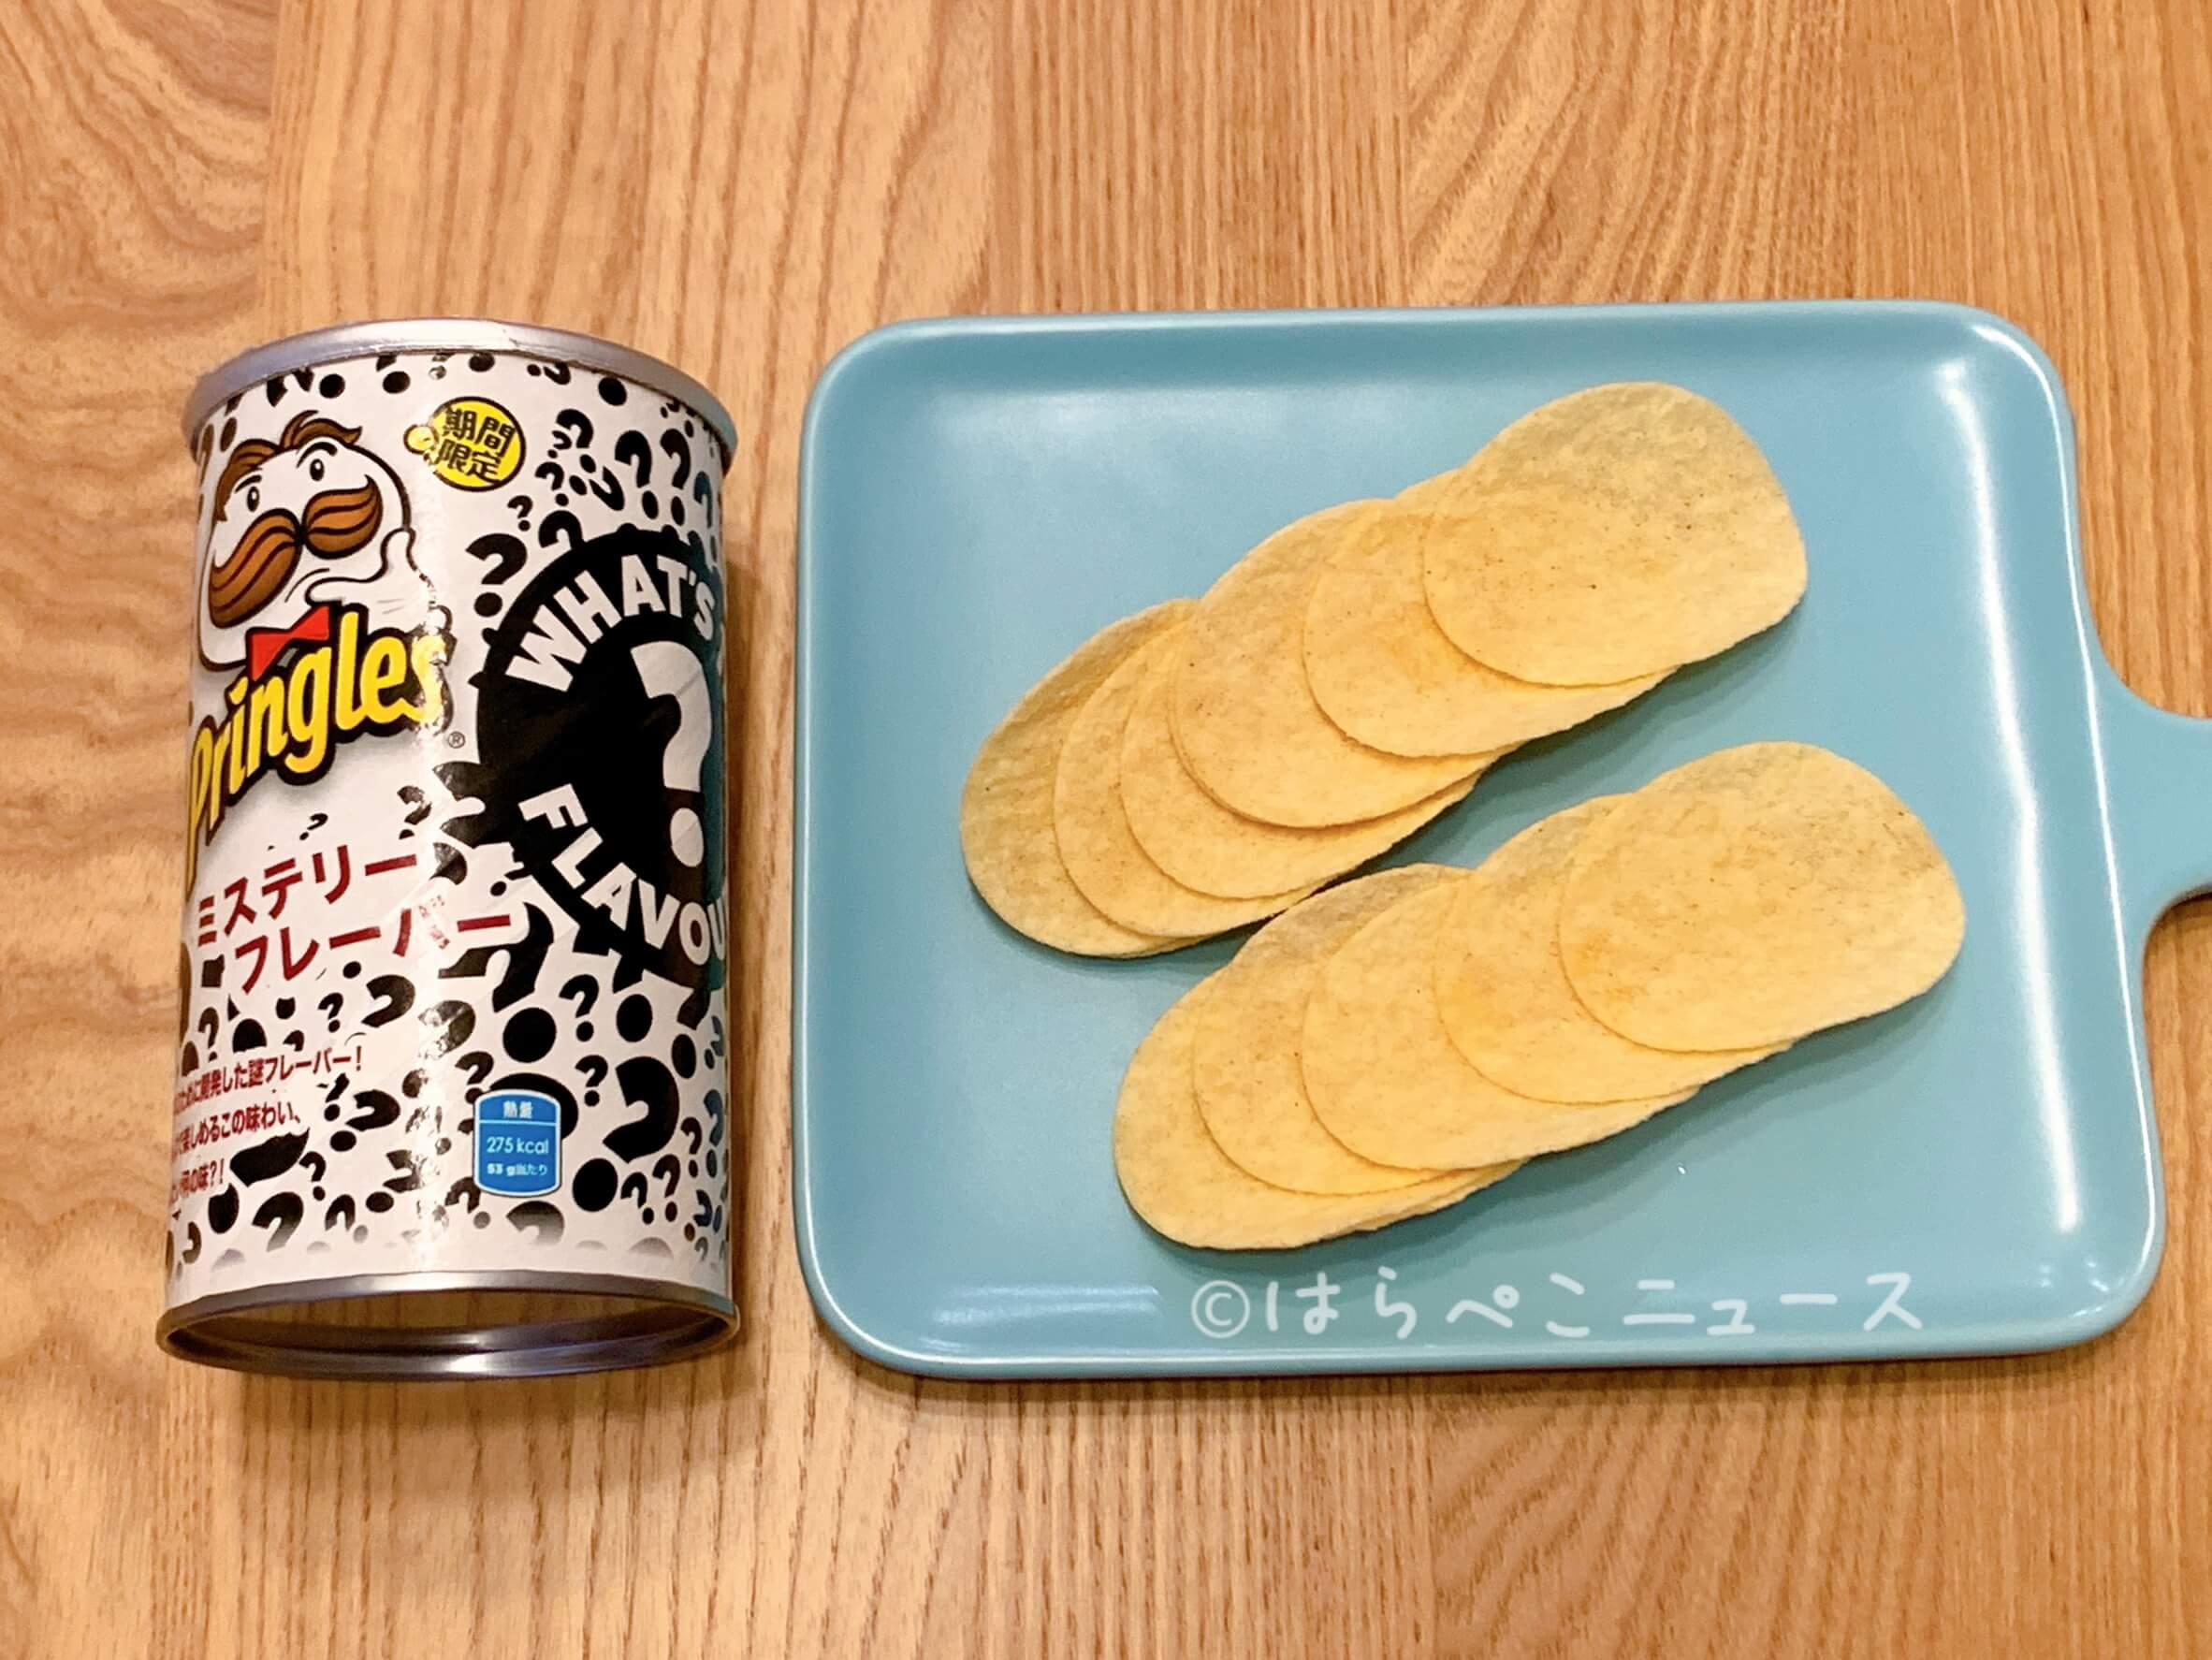 実食レポ プリングルズ ミステリーフレーバー 謎解き感覚で楽しめる日本専用に開発したポテトチップス はらぺこニュース